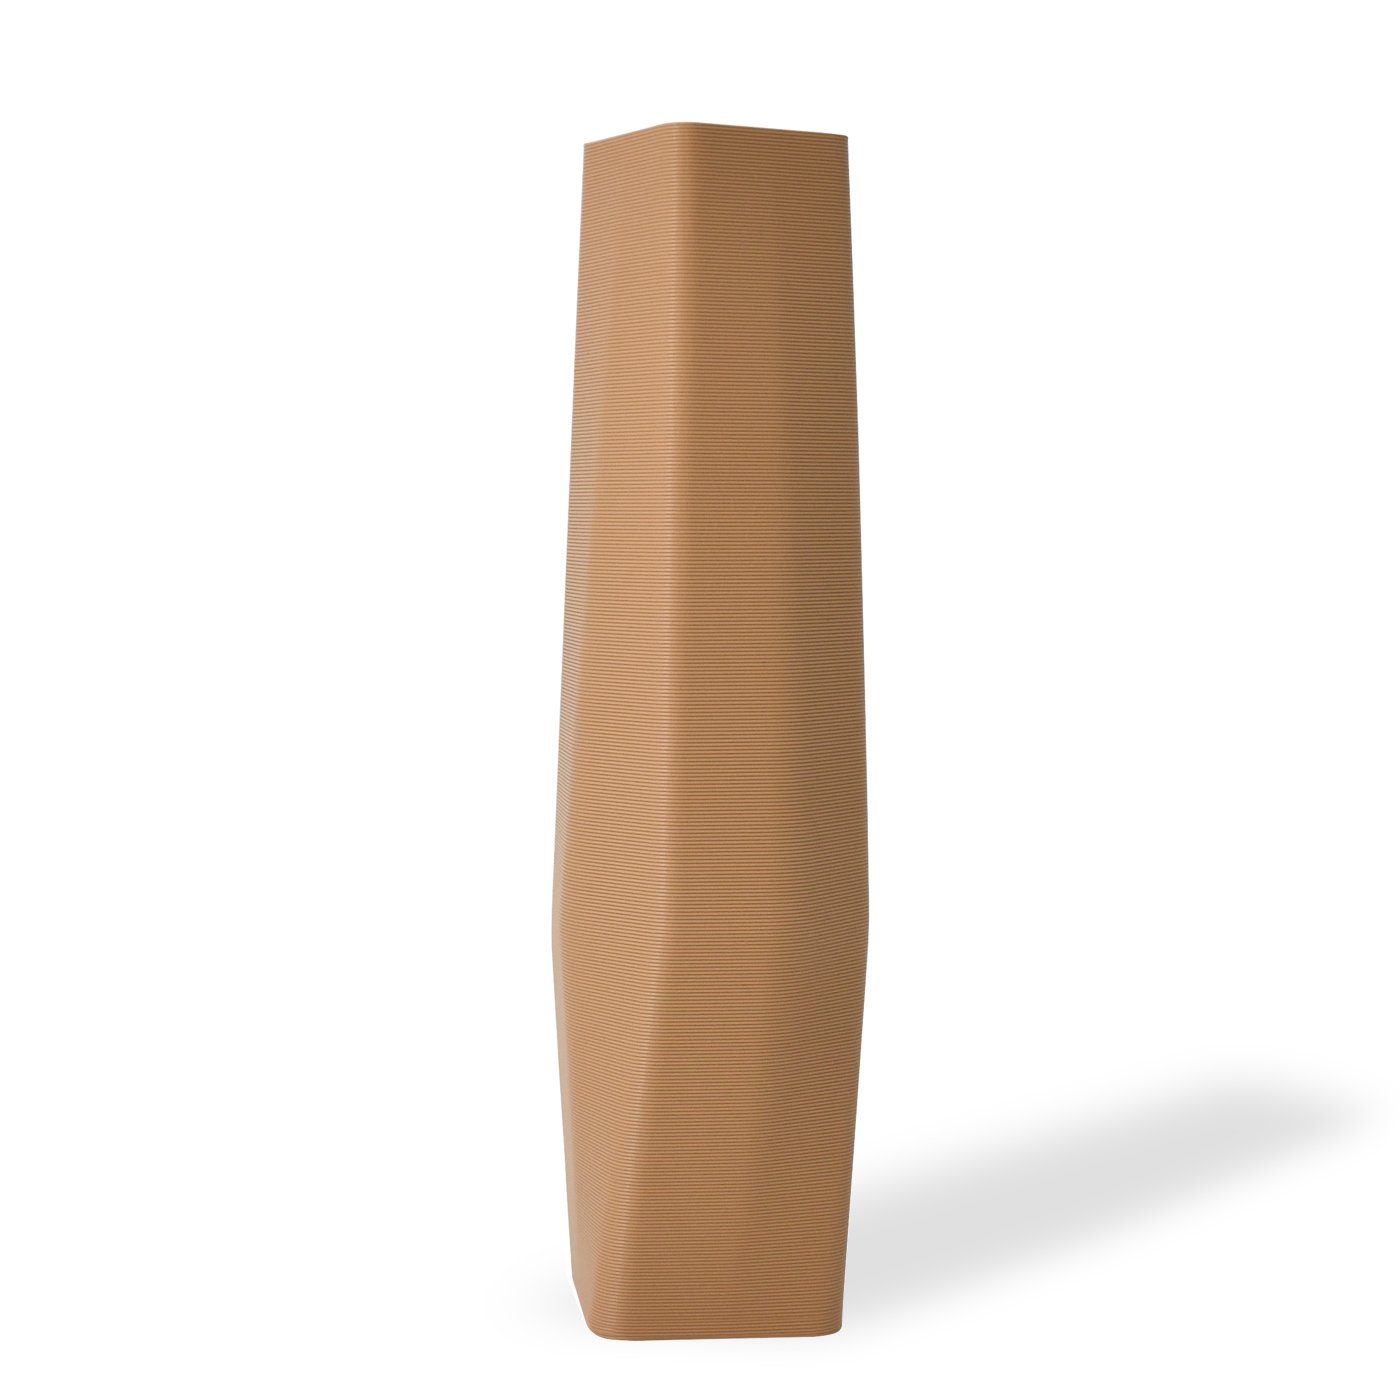 - Erdnussbraun innerhalb (basic), Struktur viele vase Vase), 3D (Einzelmodell, 100% the - Materials Farben, 3D-Druck Dekovase (Rillung) 1 Shapes Leichte Vasen, square Decorations Wasserdicht; des